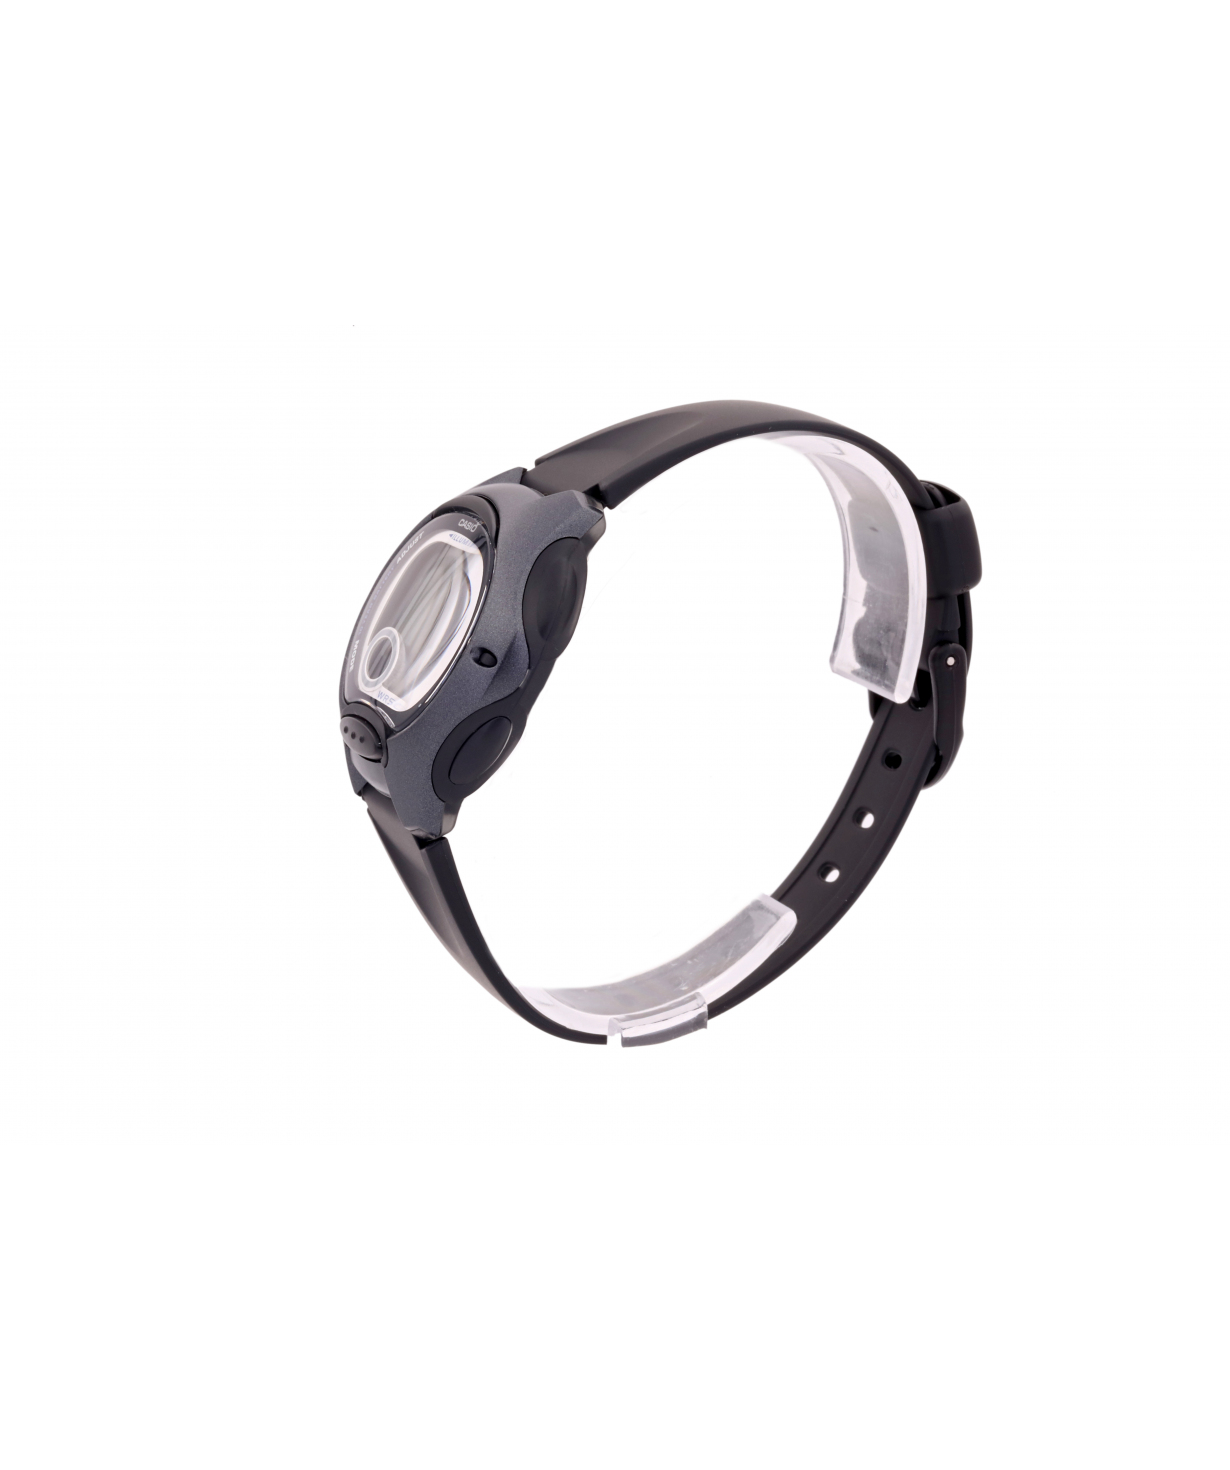 Наручные часы `Casio` LW-200-1BVDF